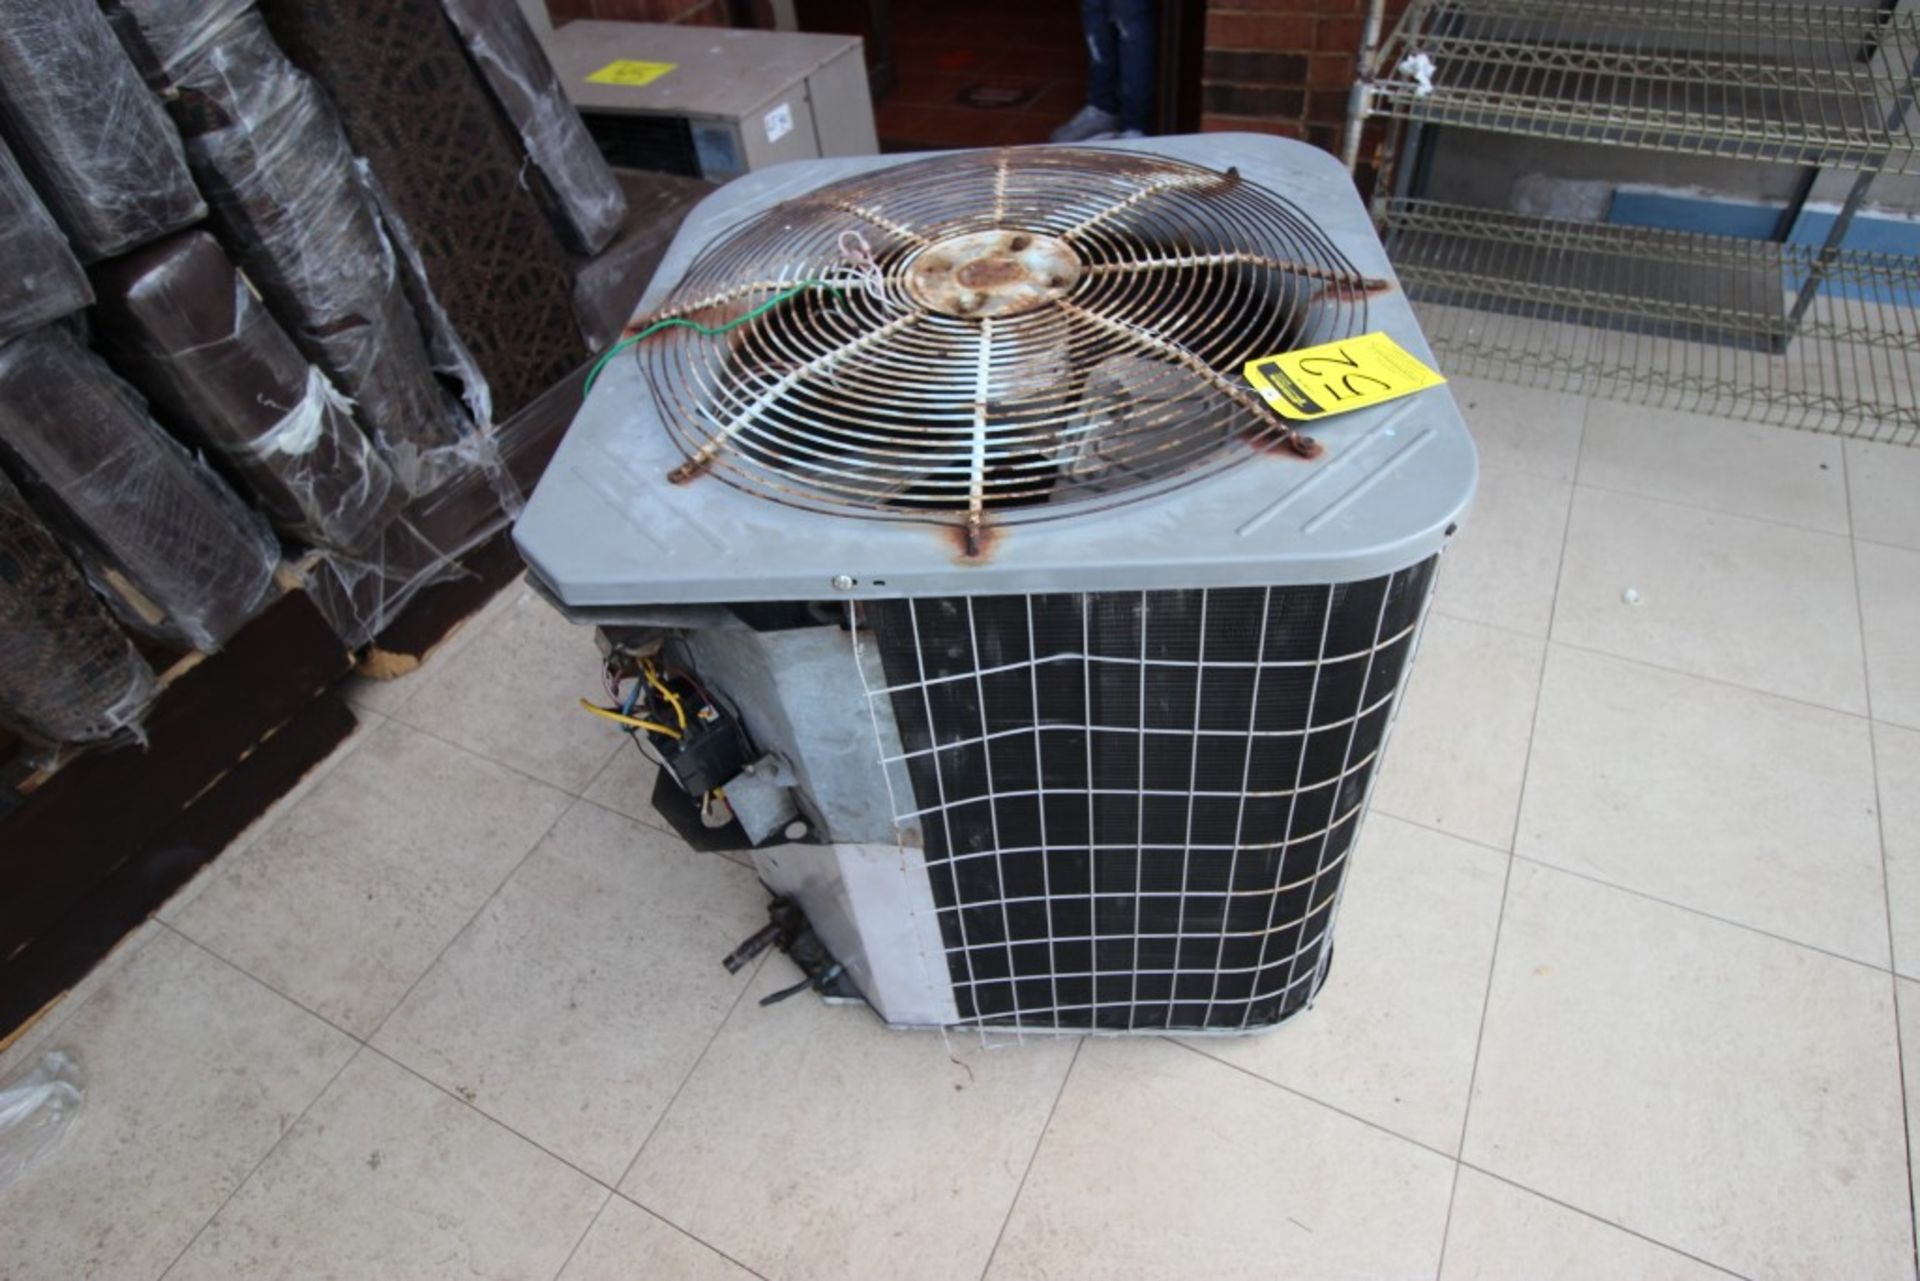 3 Unidades Condensadoras para aire acondicionado de un ventilador marca York, modelo:YCJD36S41S1A, - Image 7 of 19